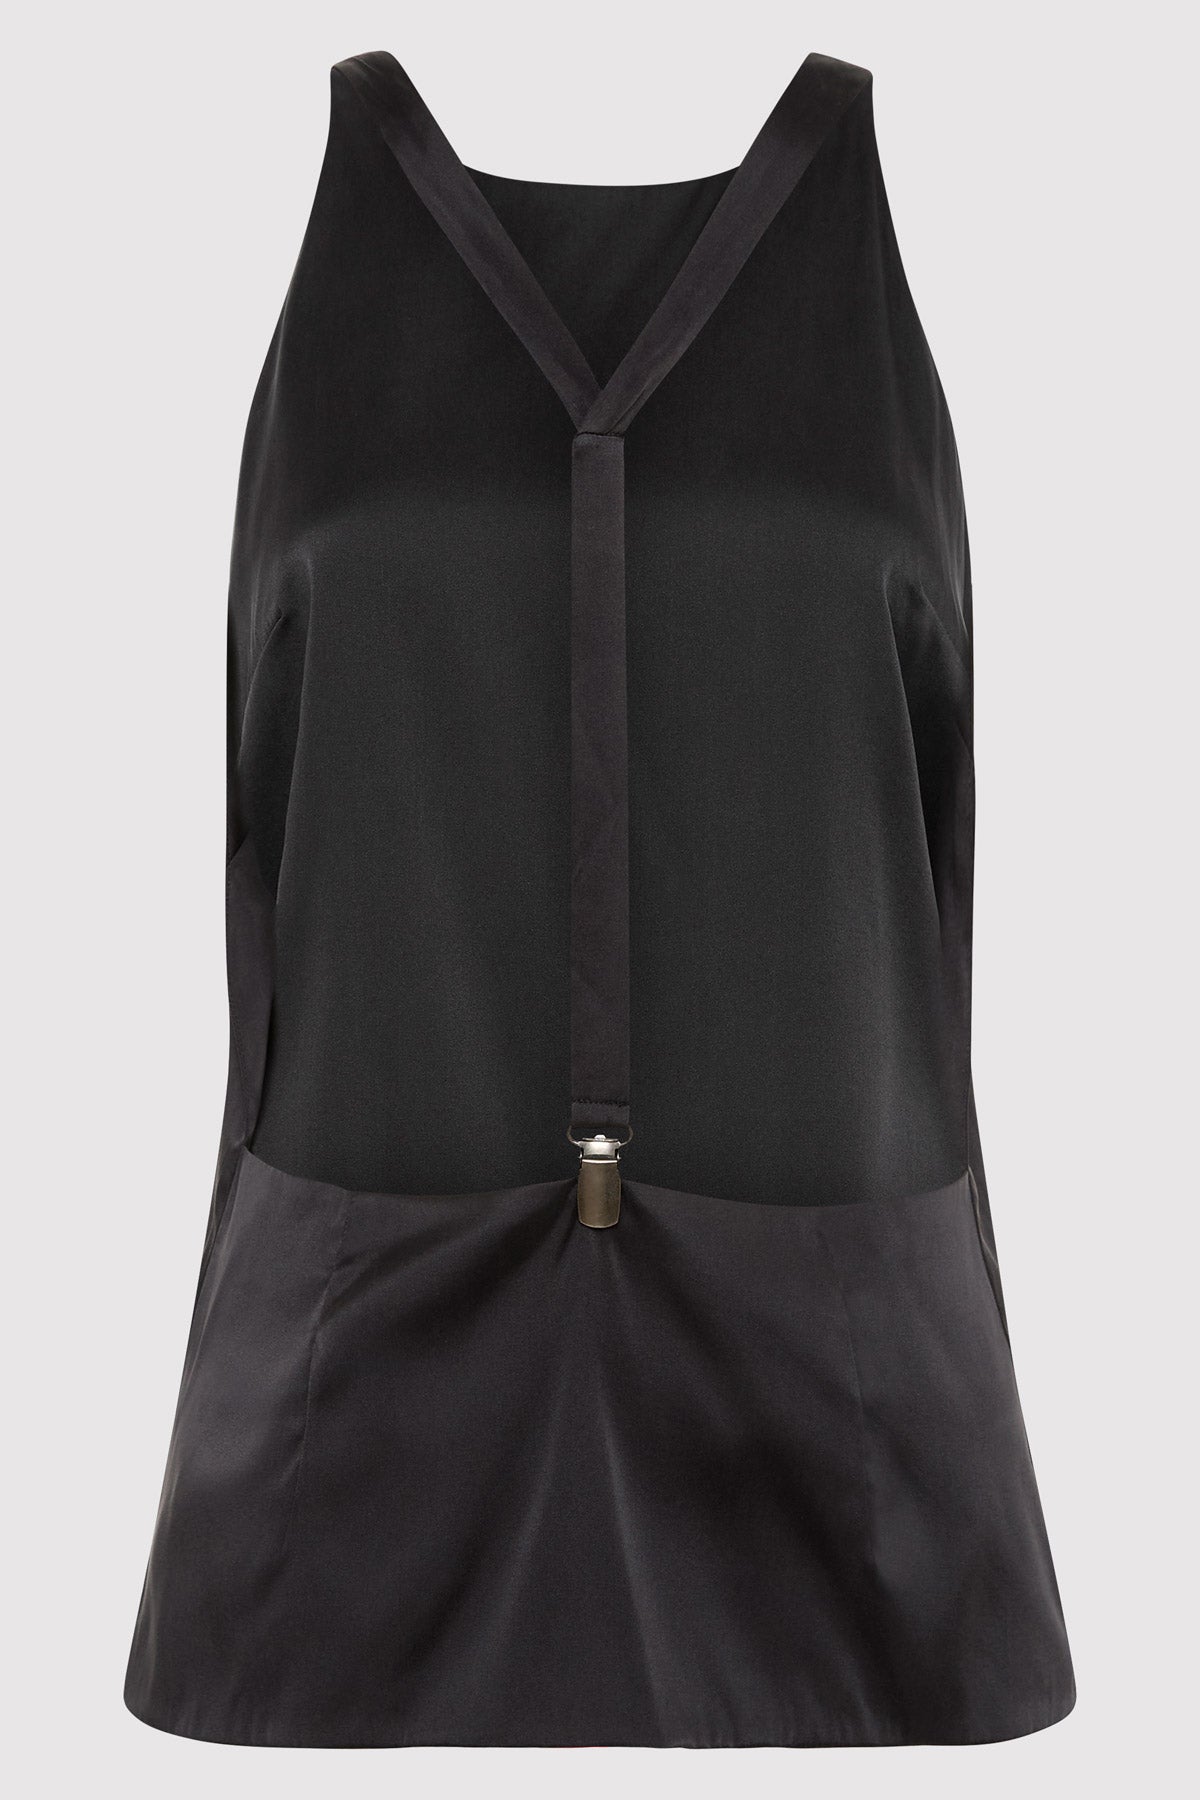 Soft Silk Suspender Top - Black